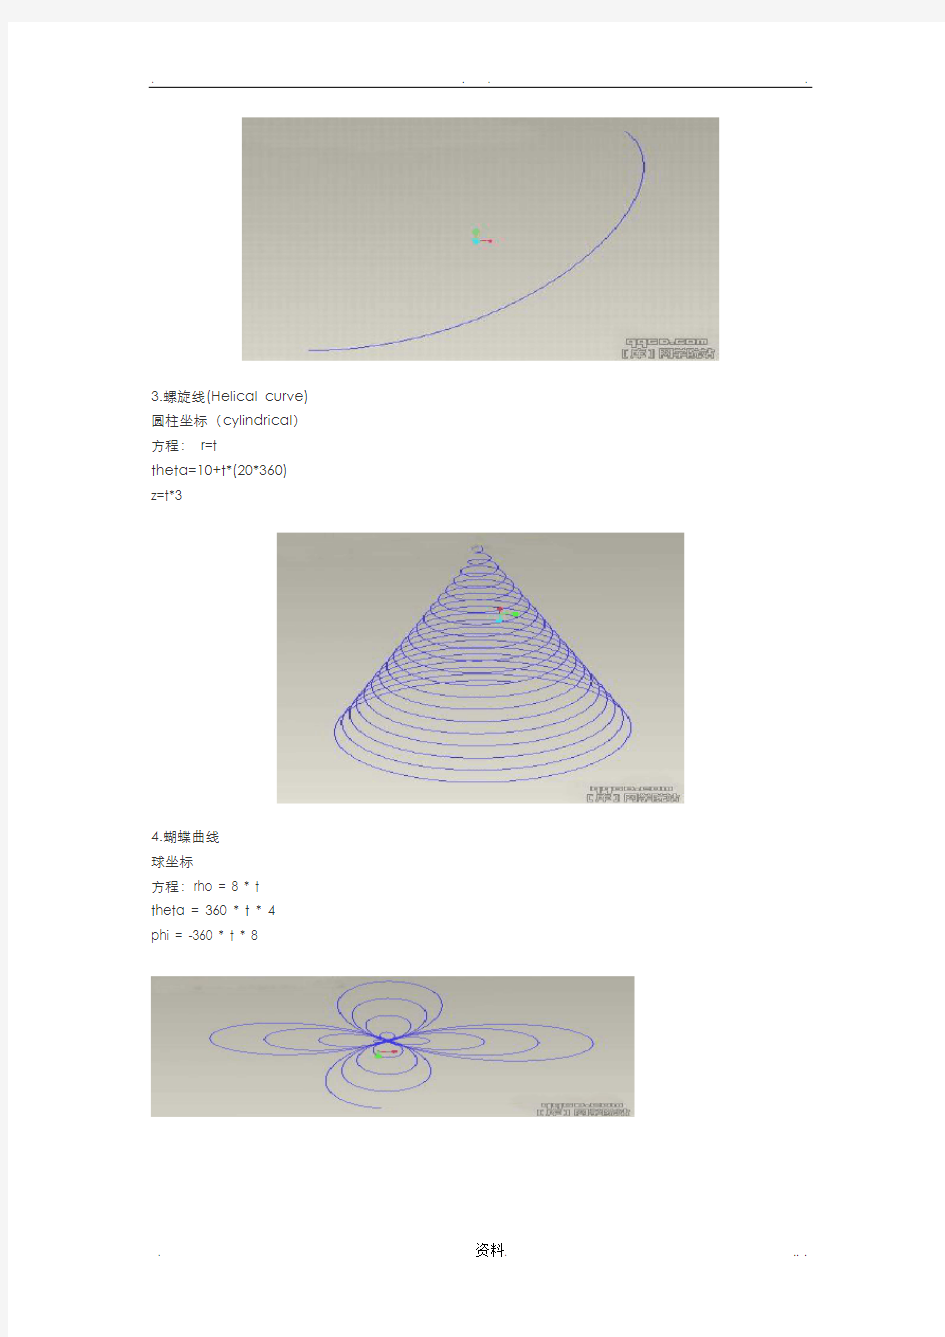 proe中曲线方程proe各种螺旋线画法